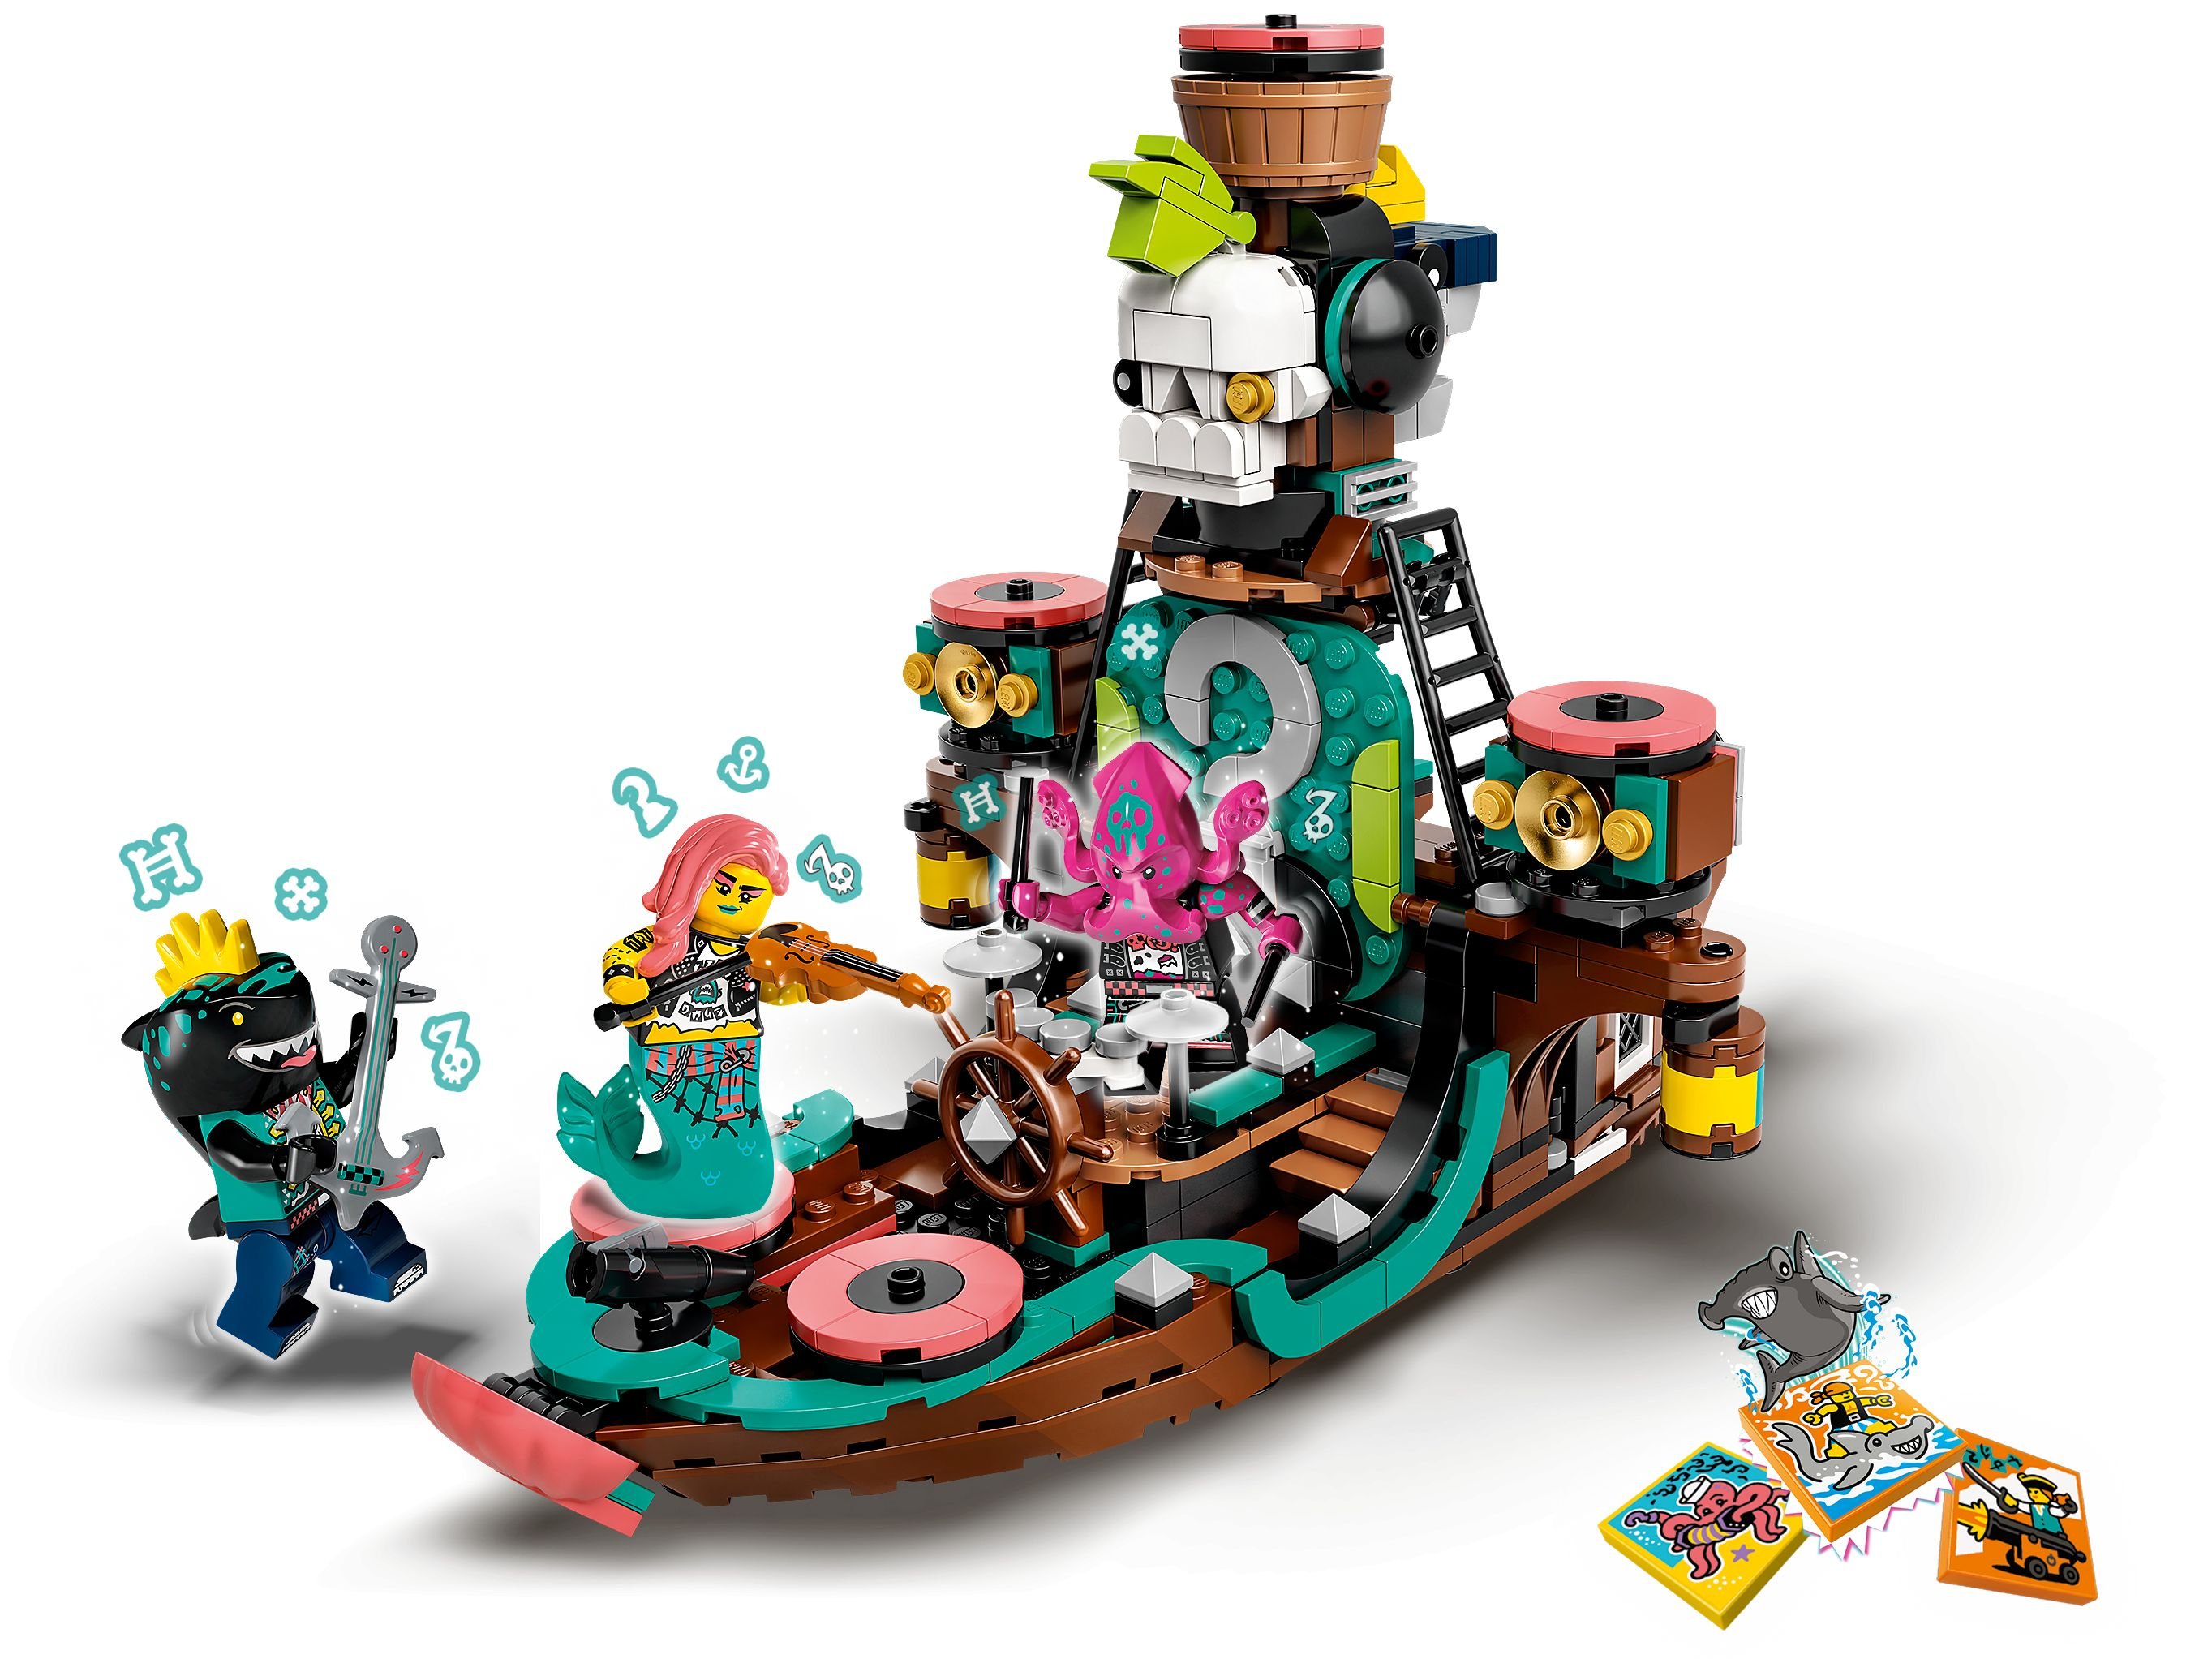 LEGO Vidiyo 43114 Punk Pirate Ship LEGO_43114_alt3.jpg